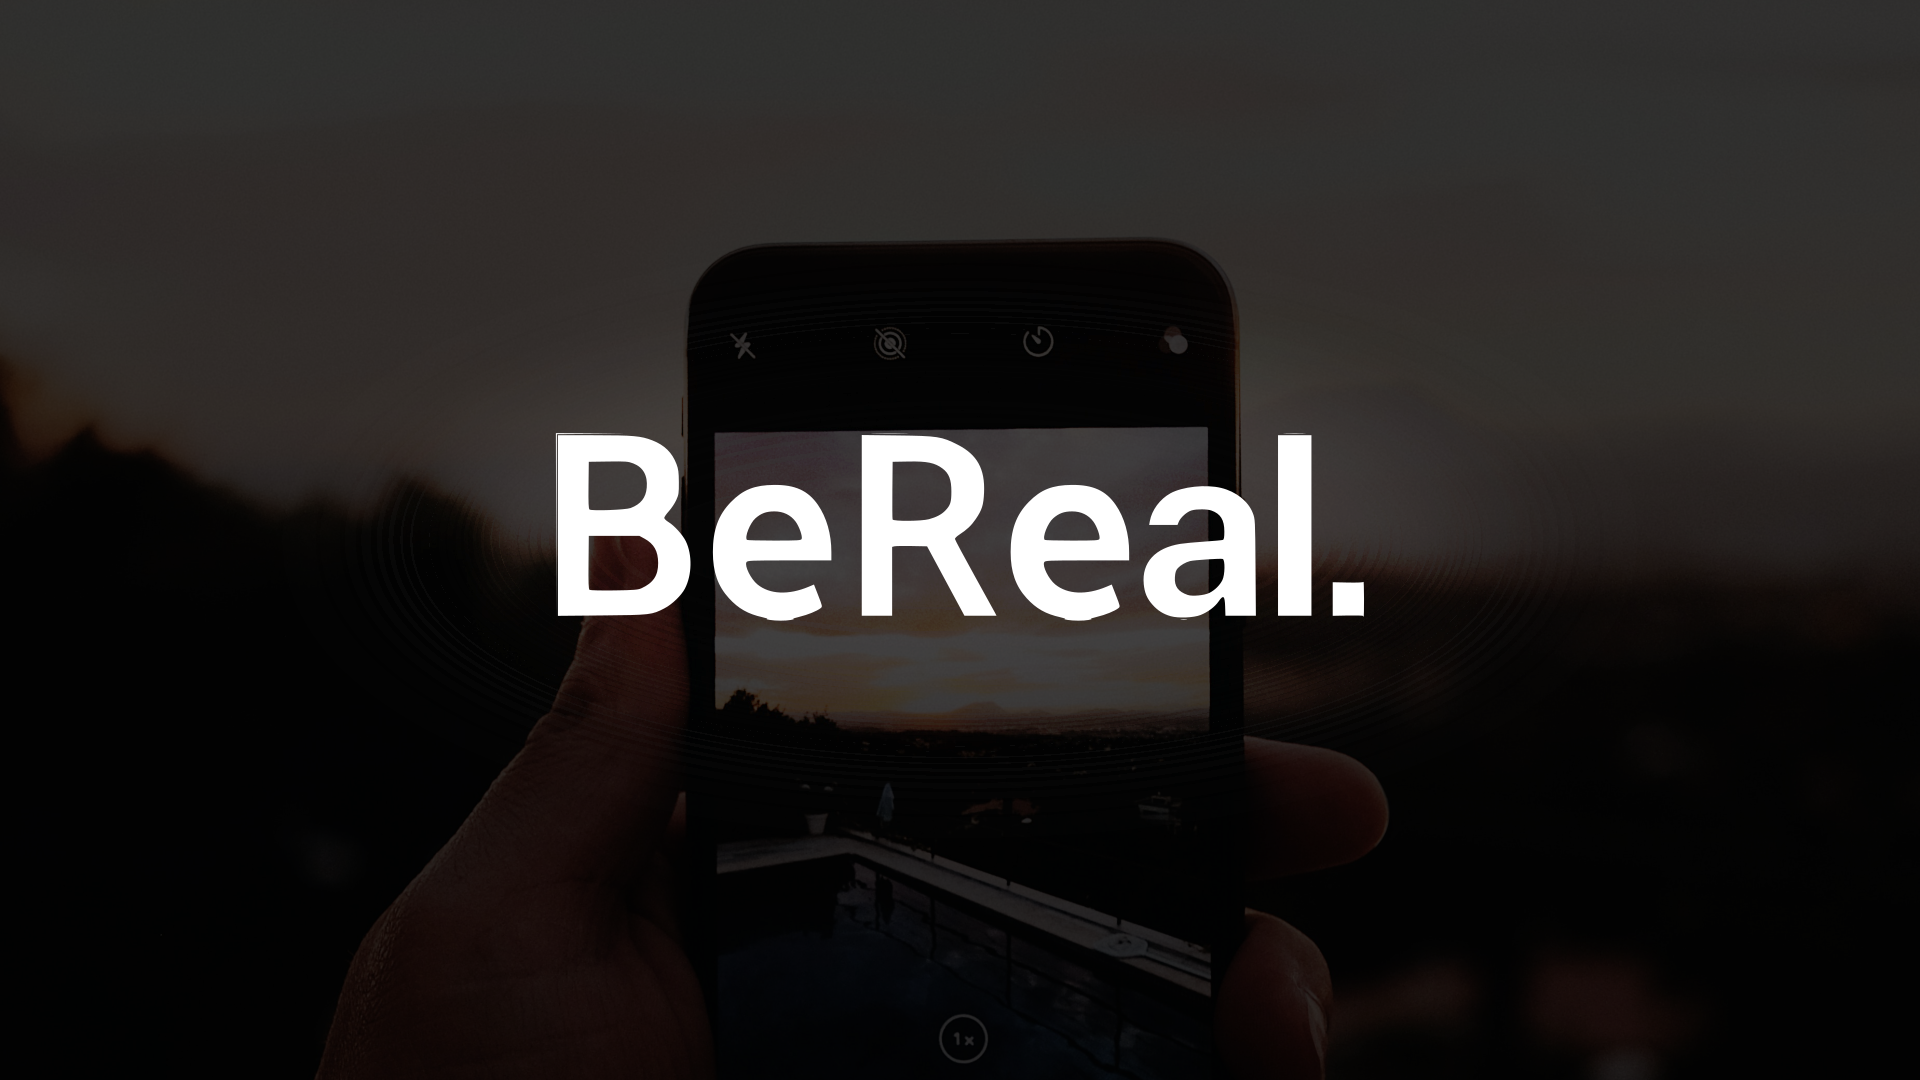 Tá crescendo? BeReal chega aos 53 milhões de instalações, mas tem poucos usuários ativos